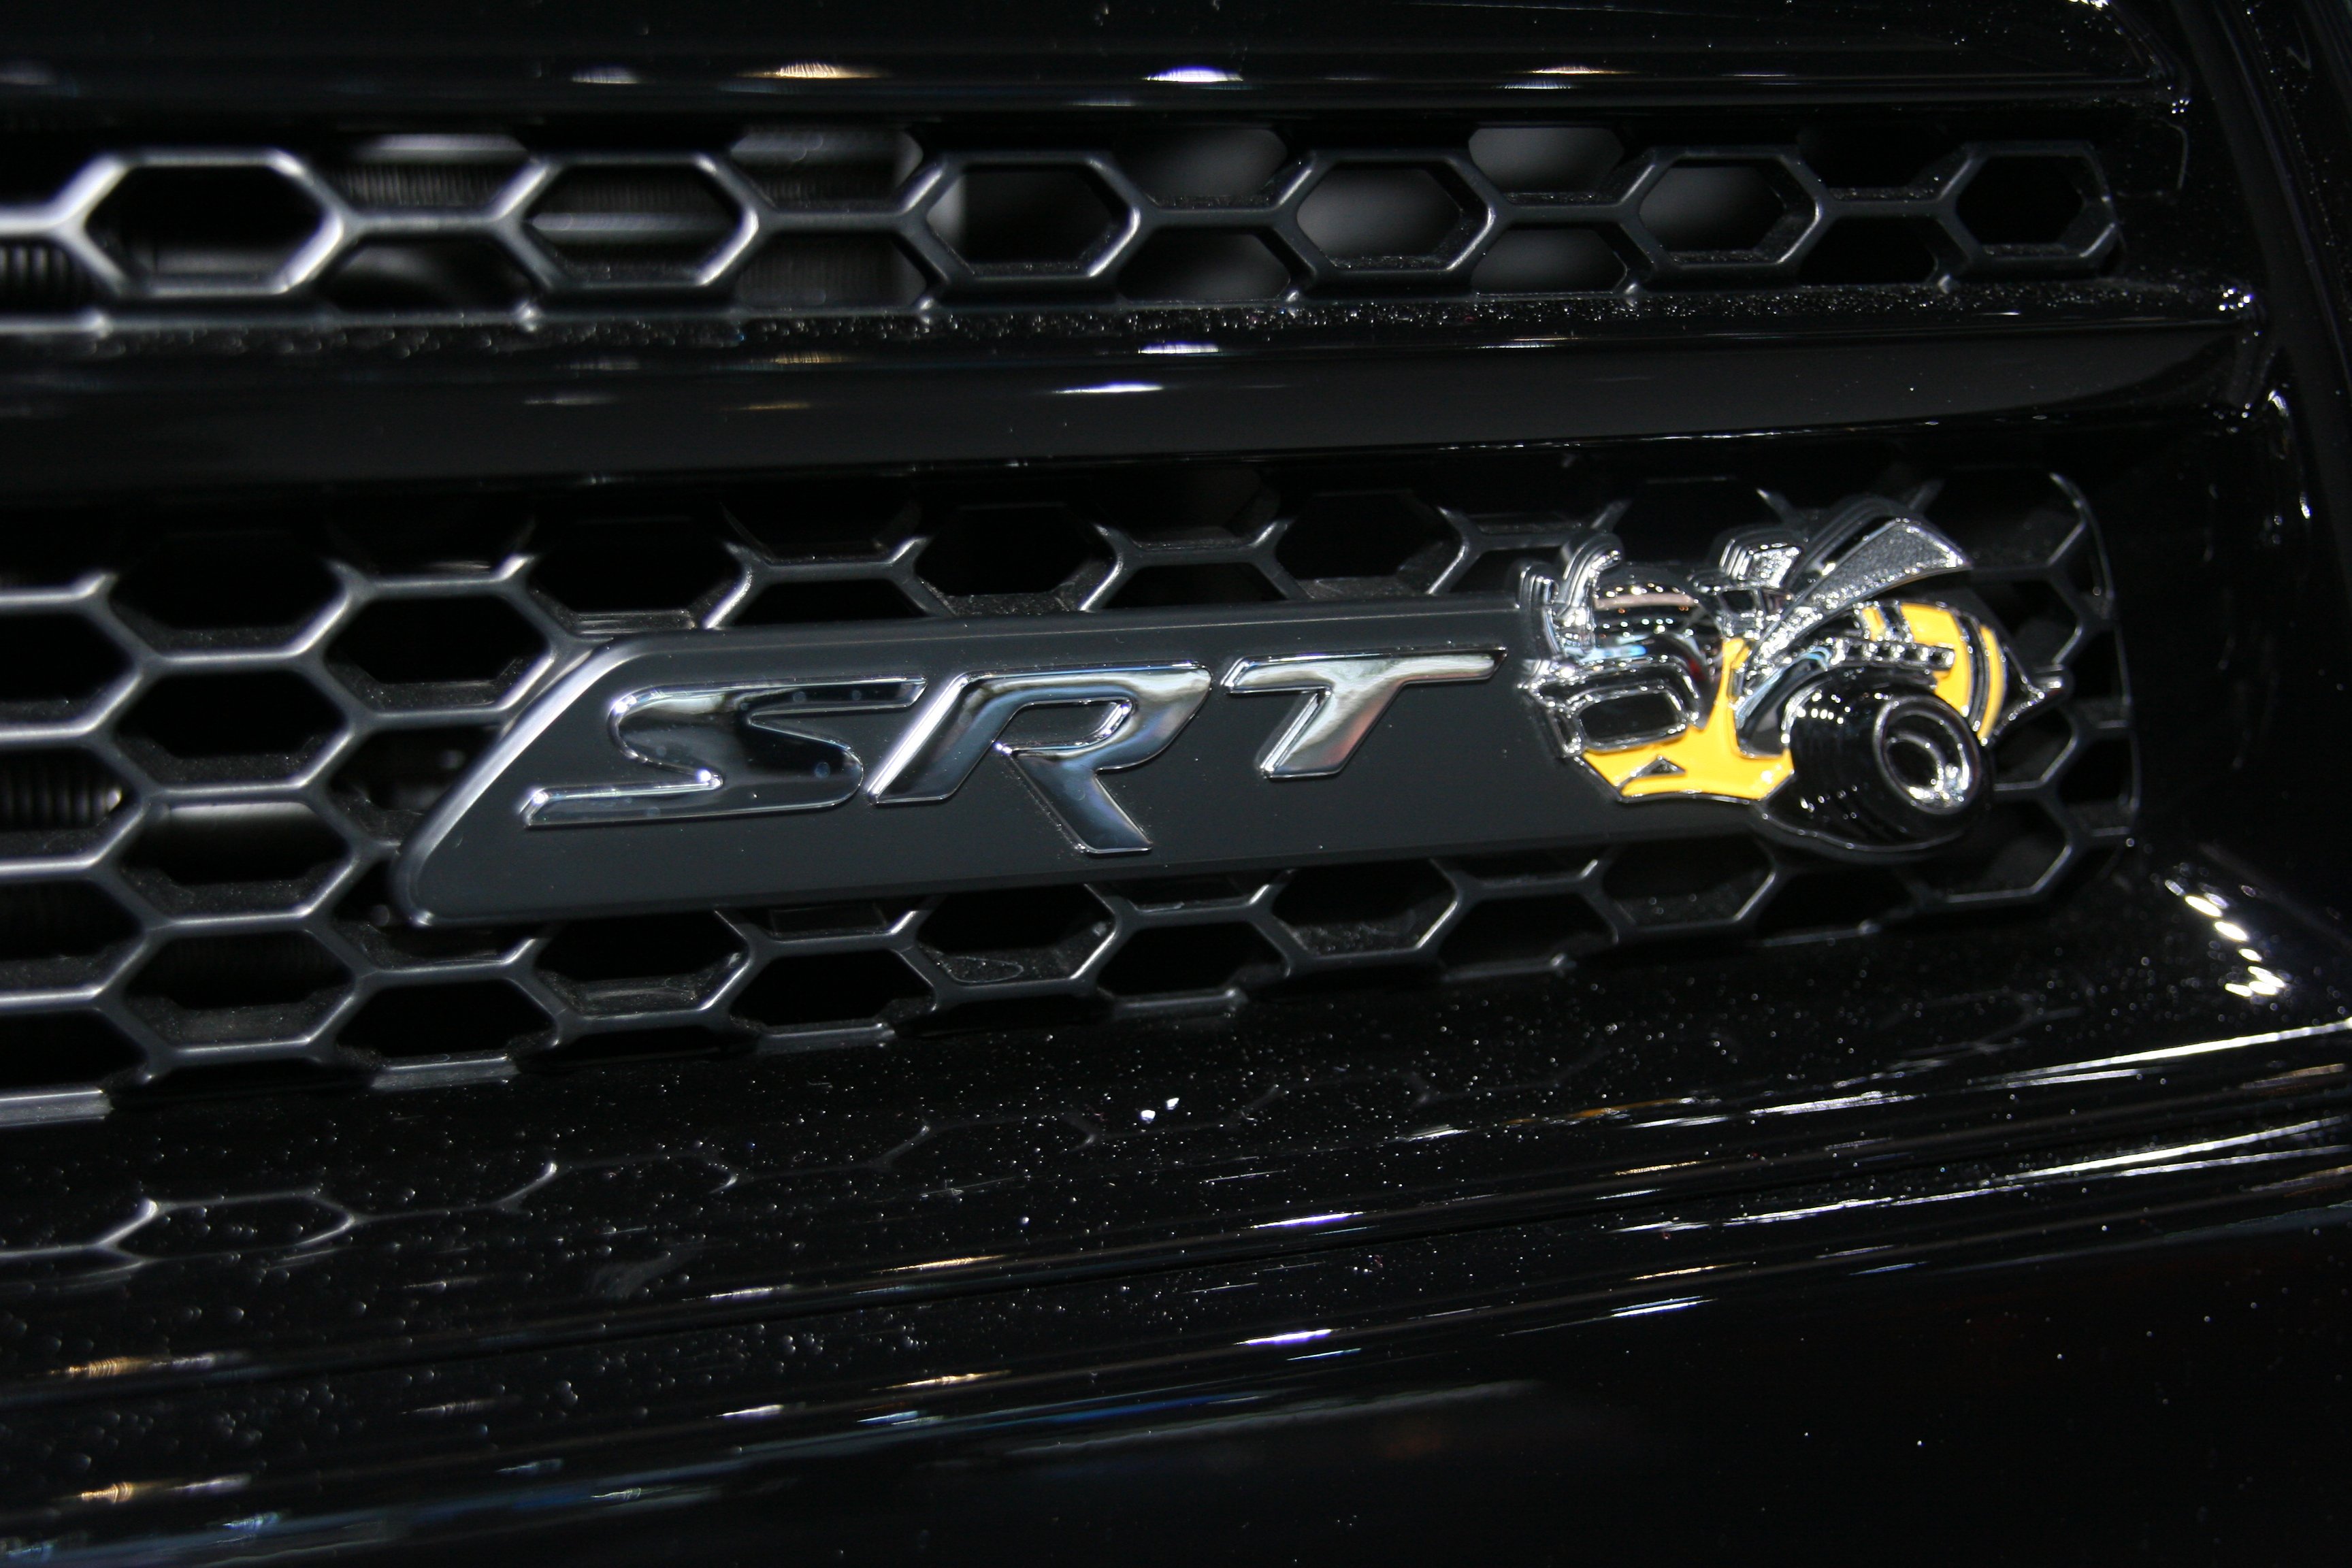 Pitch Black: 2012 Dodge Charger SRT8 Super Bee | Flickr - Photo ...